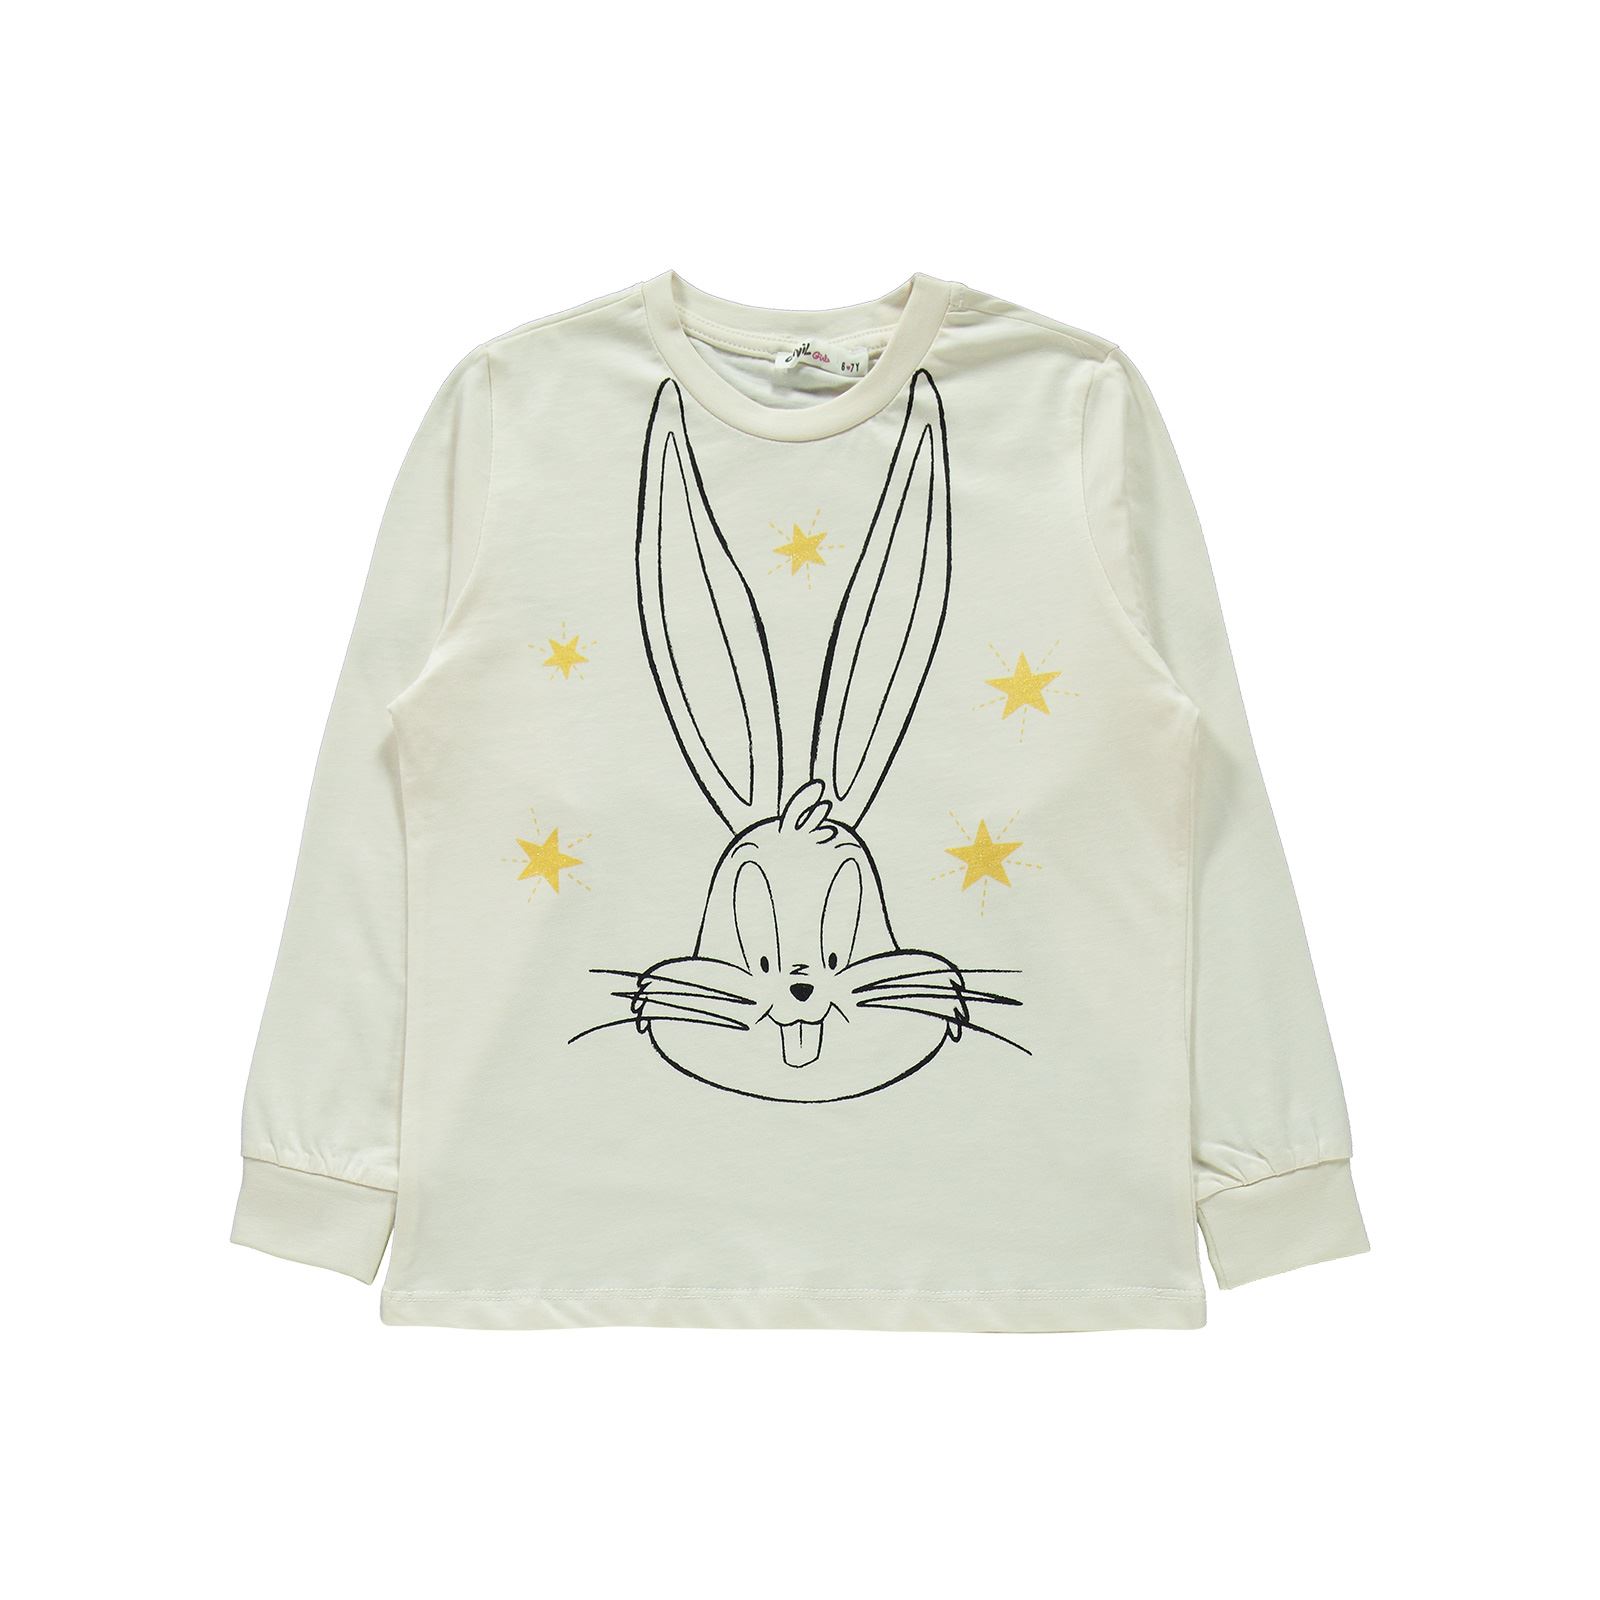 Bugs Bunny Kız Çocuk Pijama Takımı 6-9 Yaş Krem